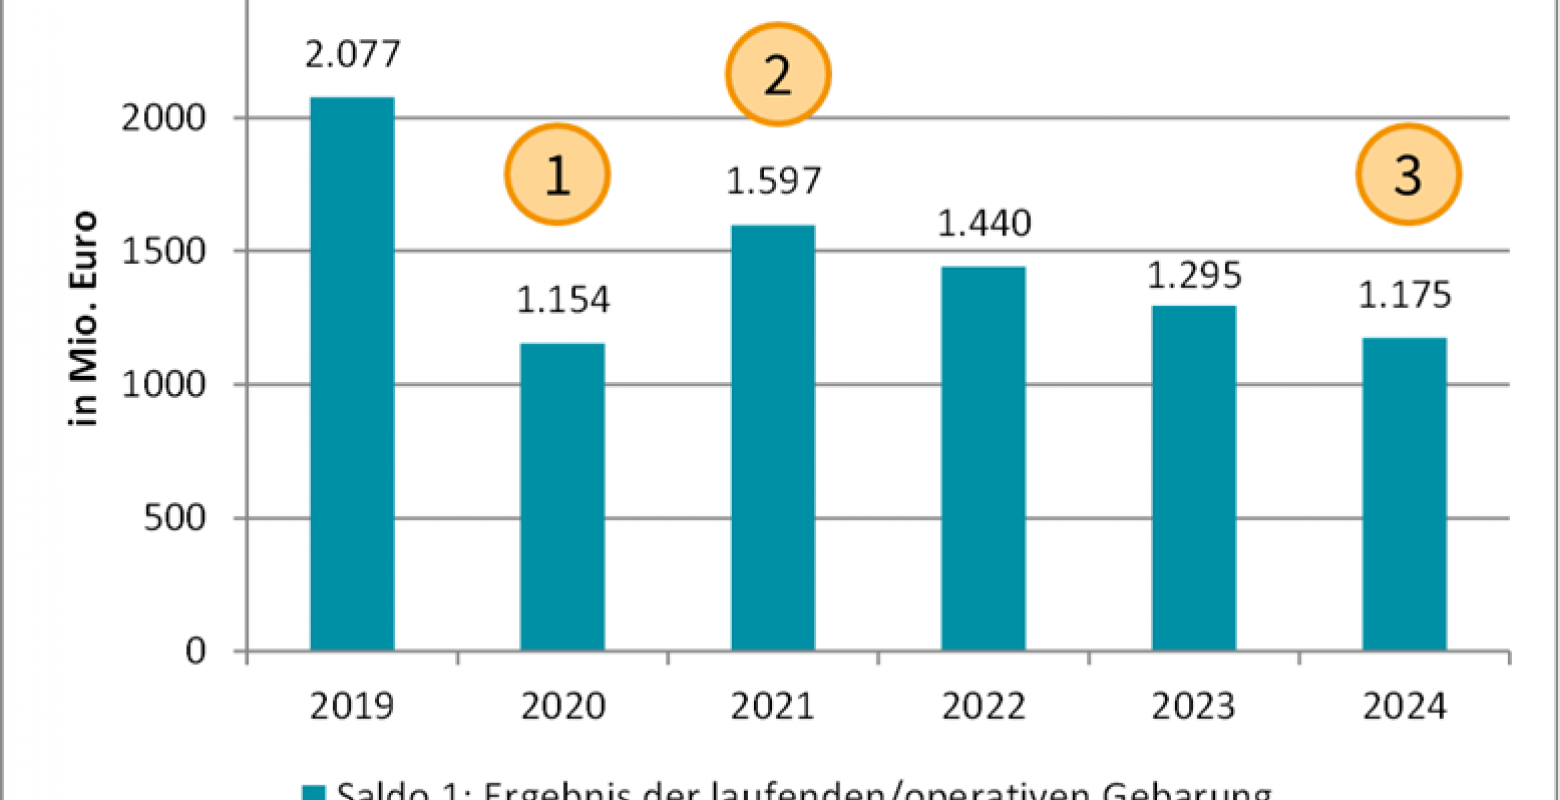 Abbildung 1: Überschuss der laufenden/operativen Gebarung in Mio. Euro, 2019-2024